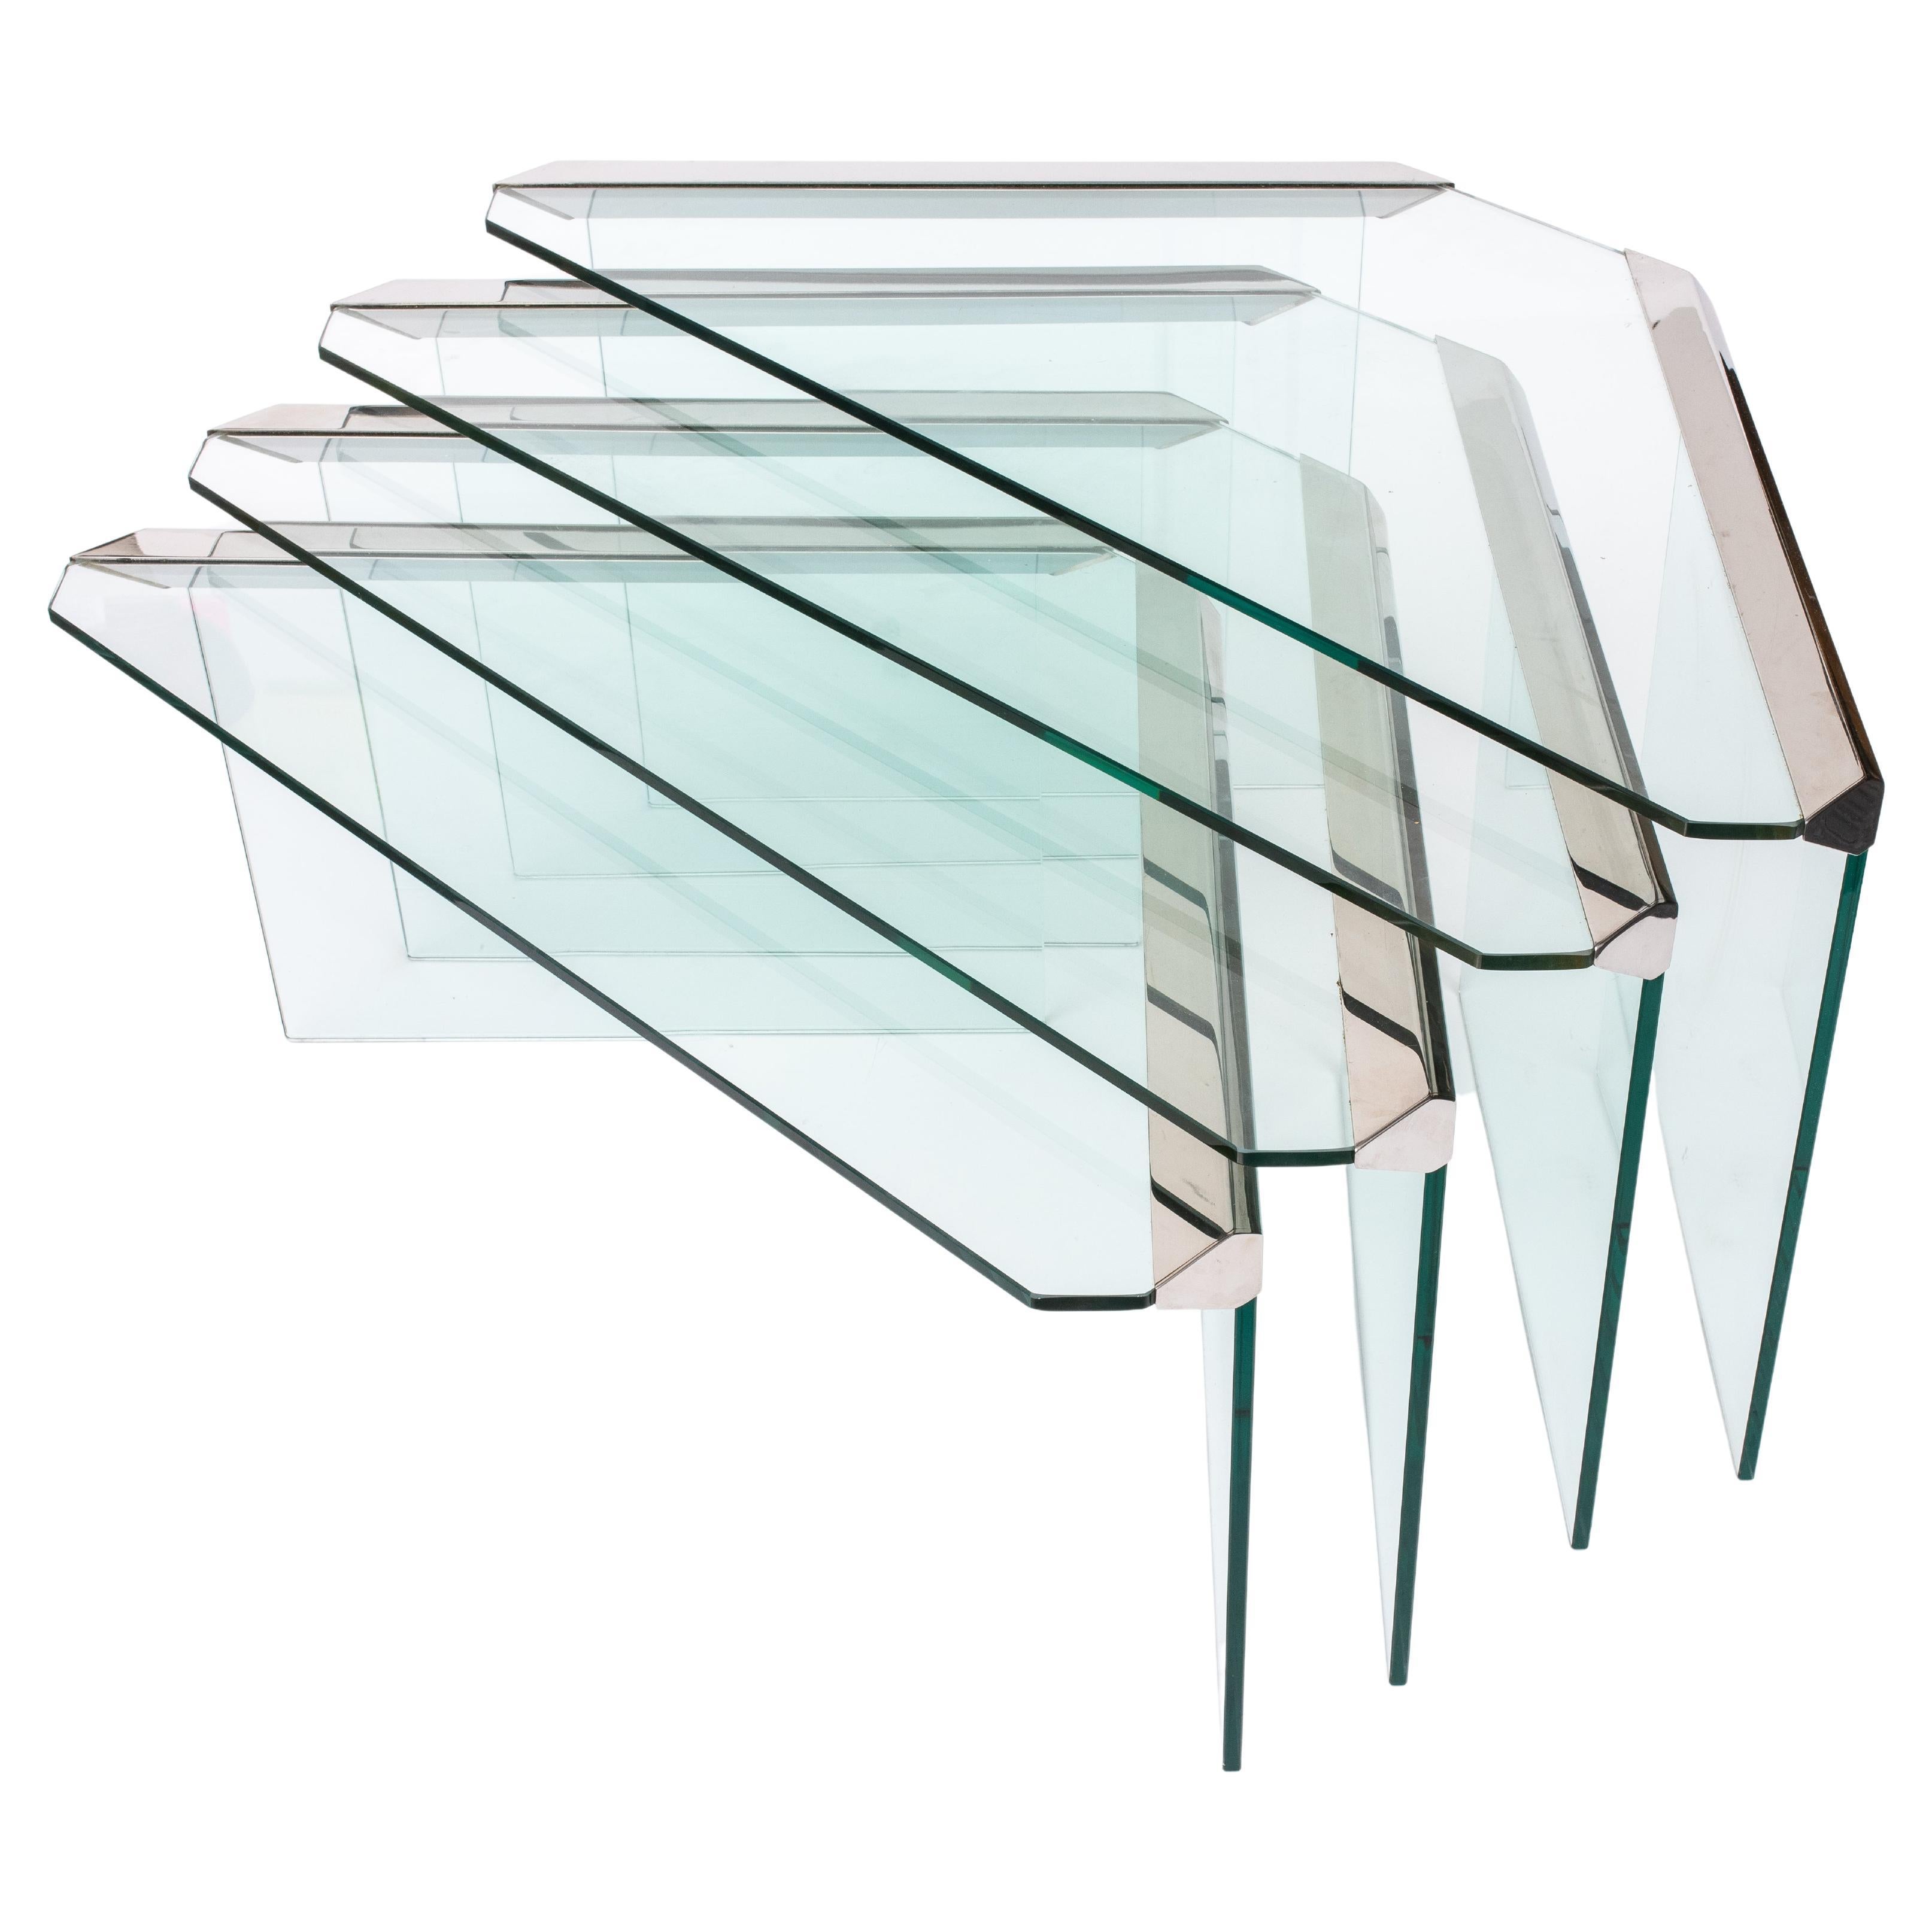 Pierangelo Galotti para Galotti & Radice Conjunto moderno italiano de cuatro mesas nido de cromo y cristal, fabricado a principios de los años ochenta. La más alta:

Medidas: 15